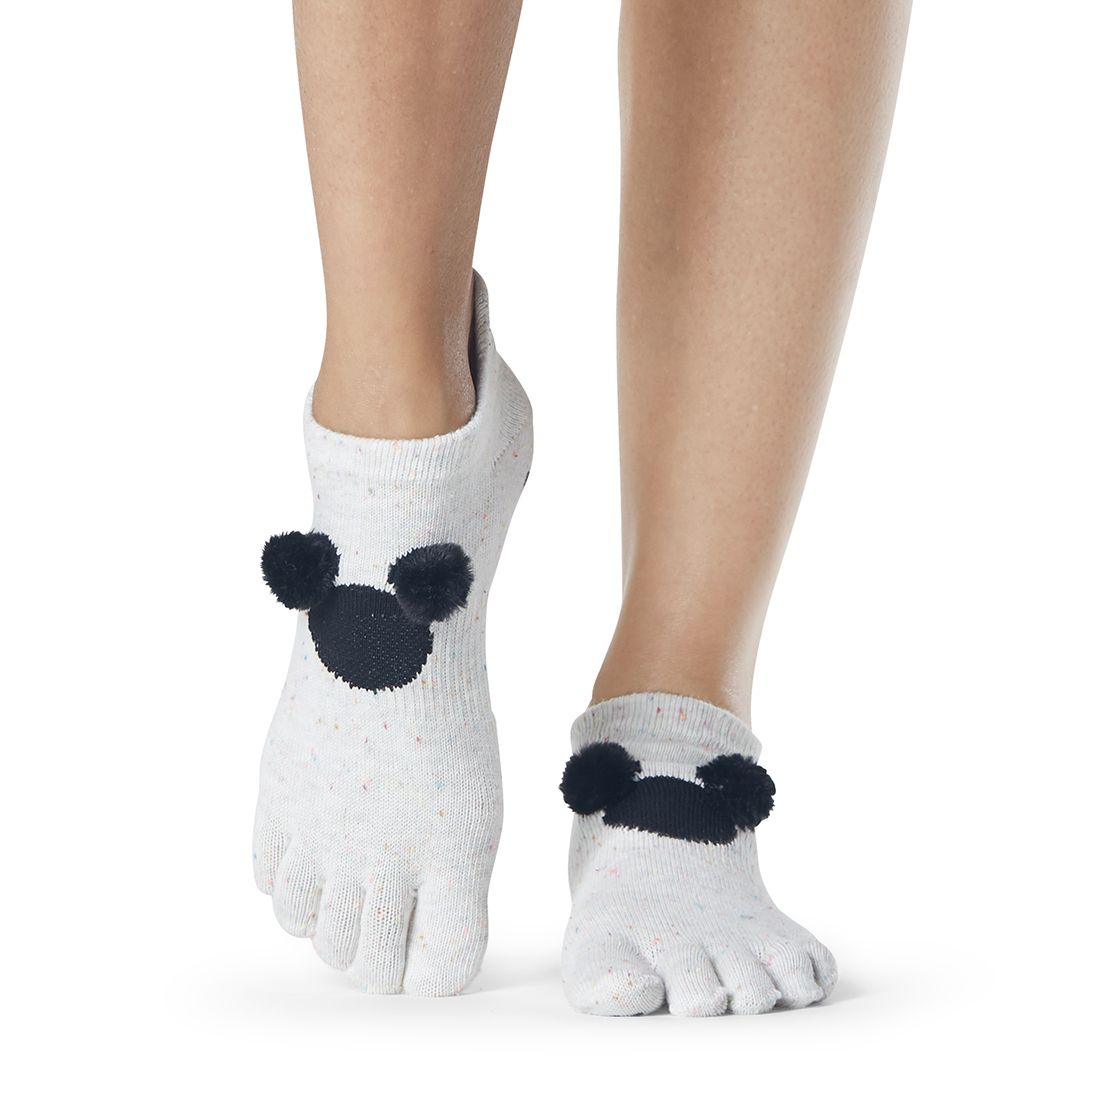 Achternaam paus Promotie Disney sokken kopen? Deze Mickey Mouse sokken zijn iets voor jou!